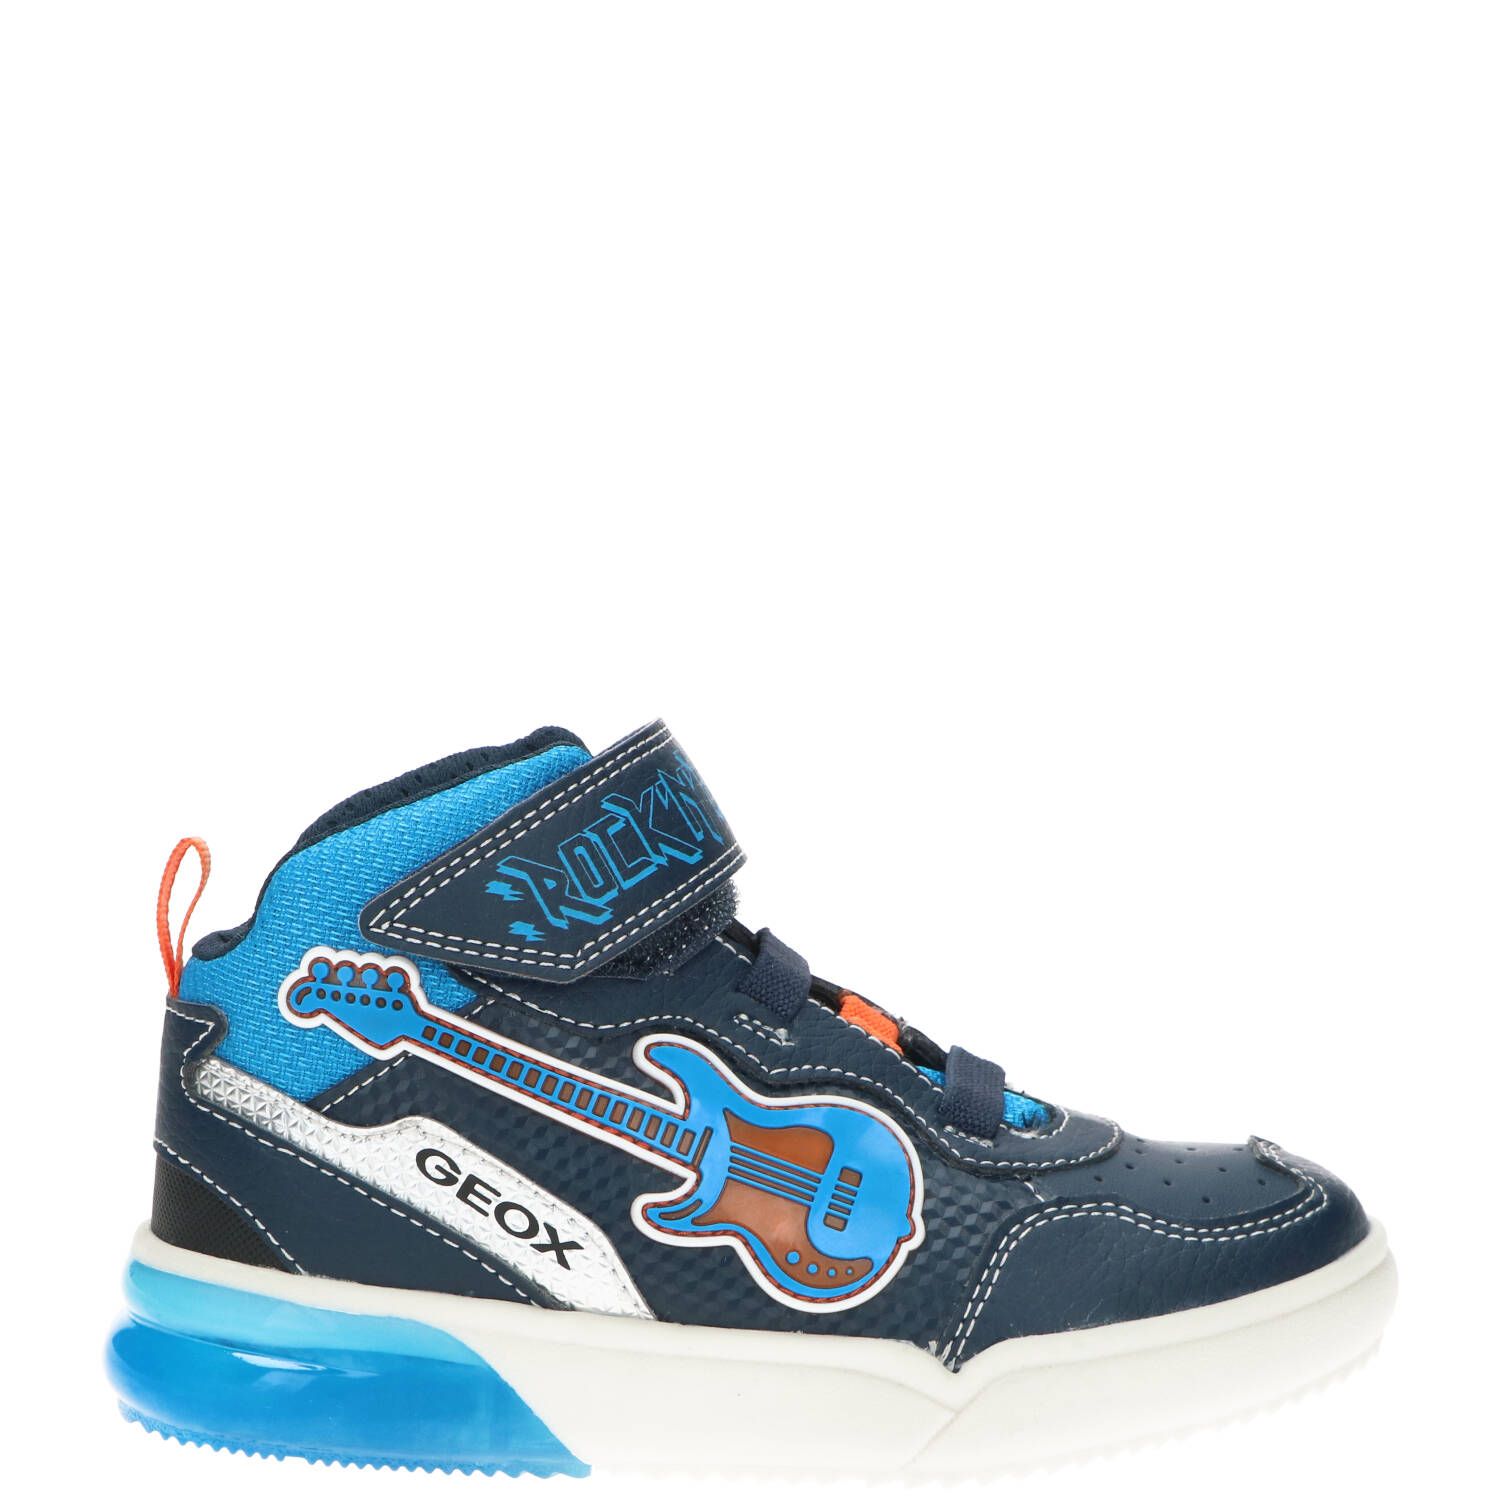 Geox Jongensboot, Lage schoenen, Jongen, Maat 34, blauw